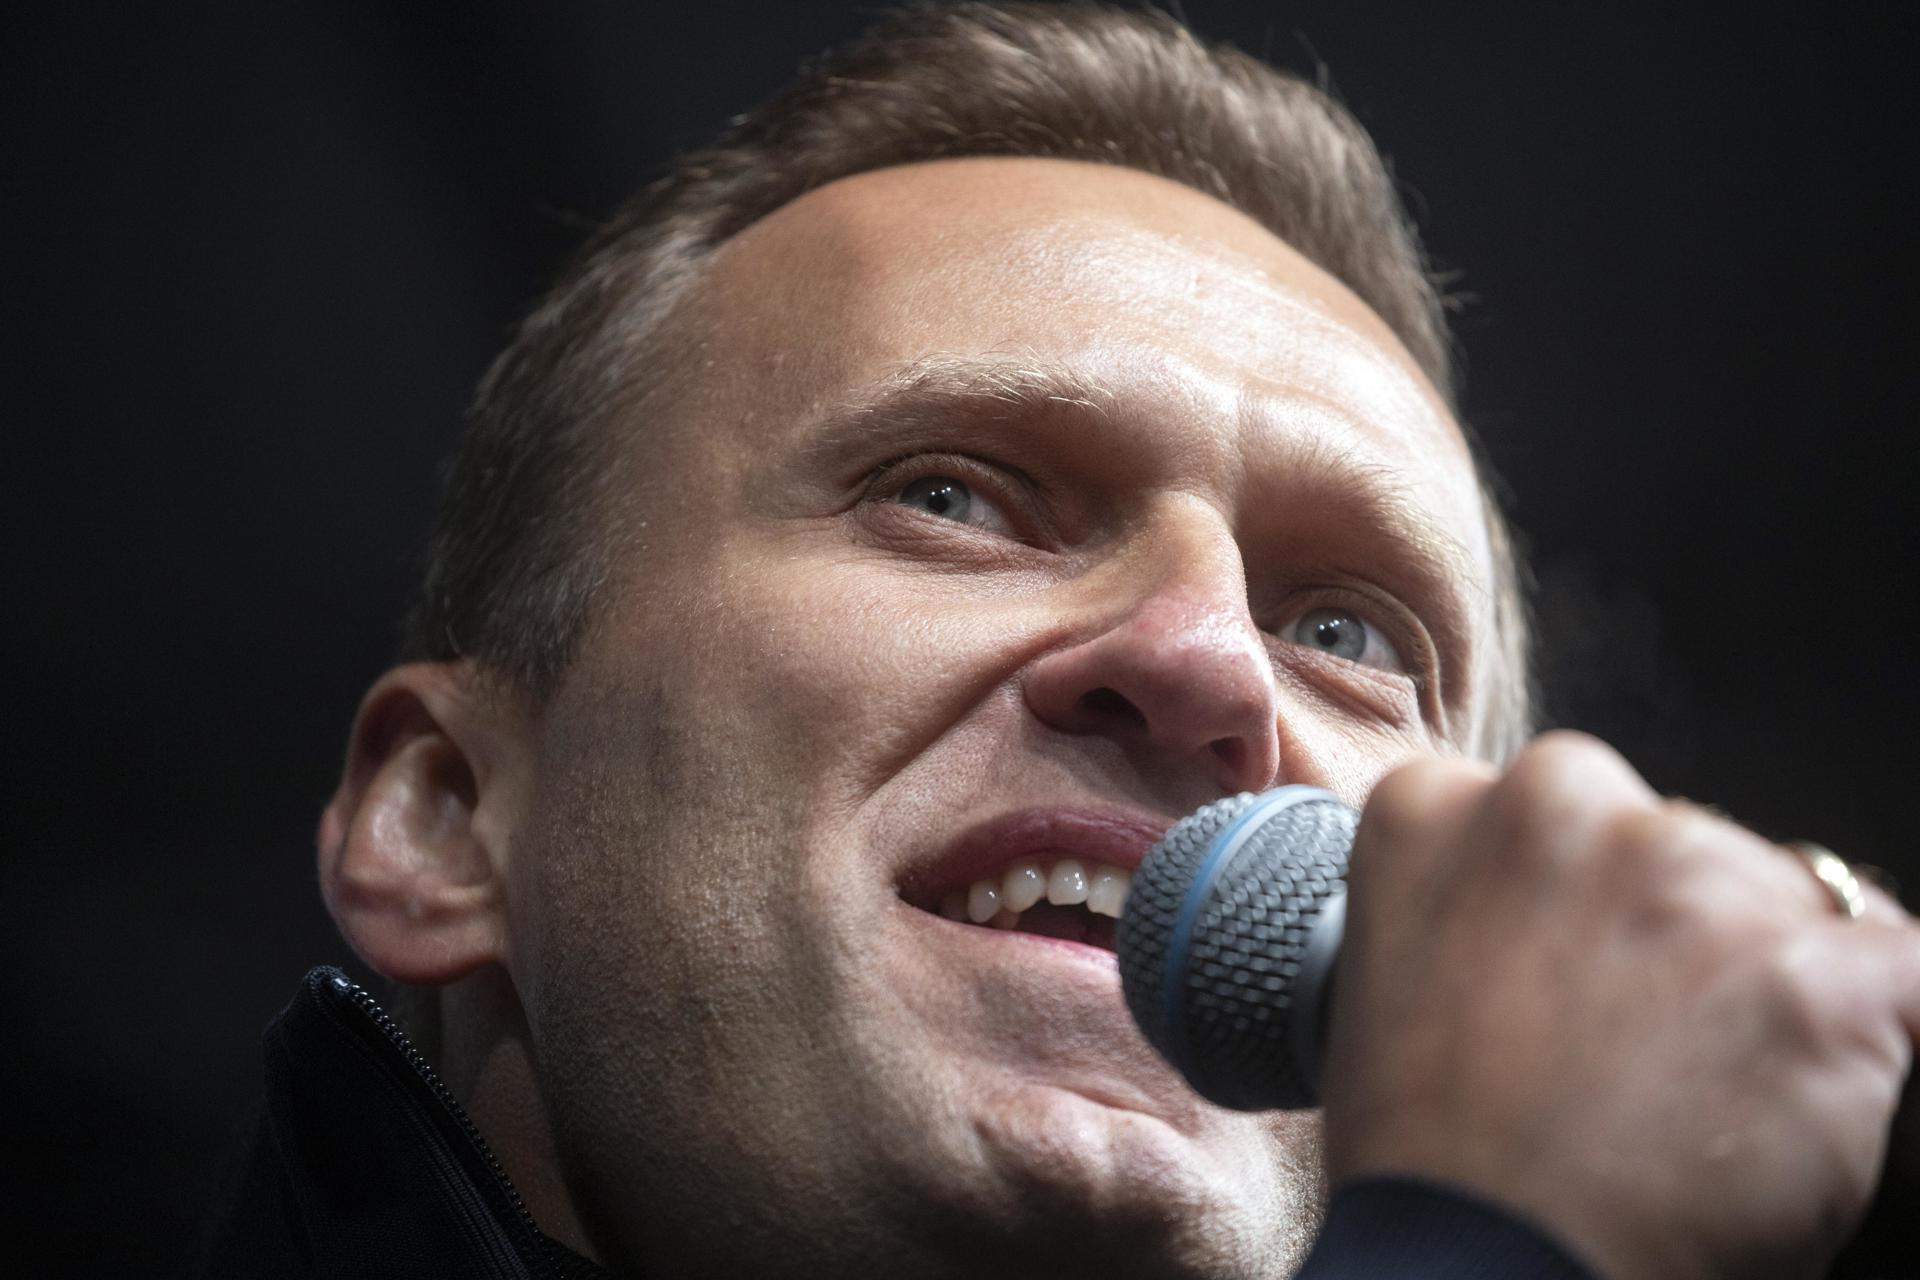 El mensaje que Navalni dejó grabado por si lo mataban: "No os rindáis"